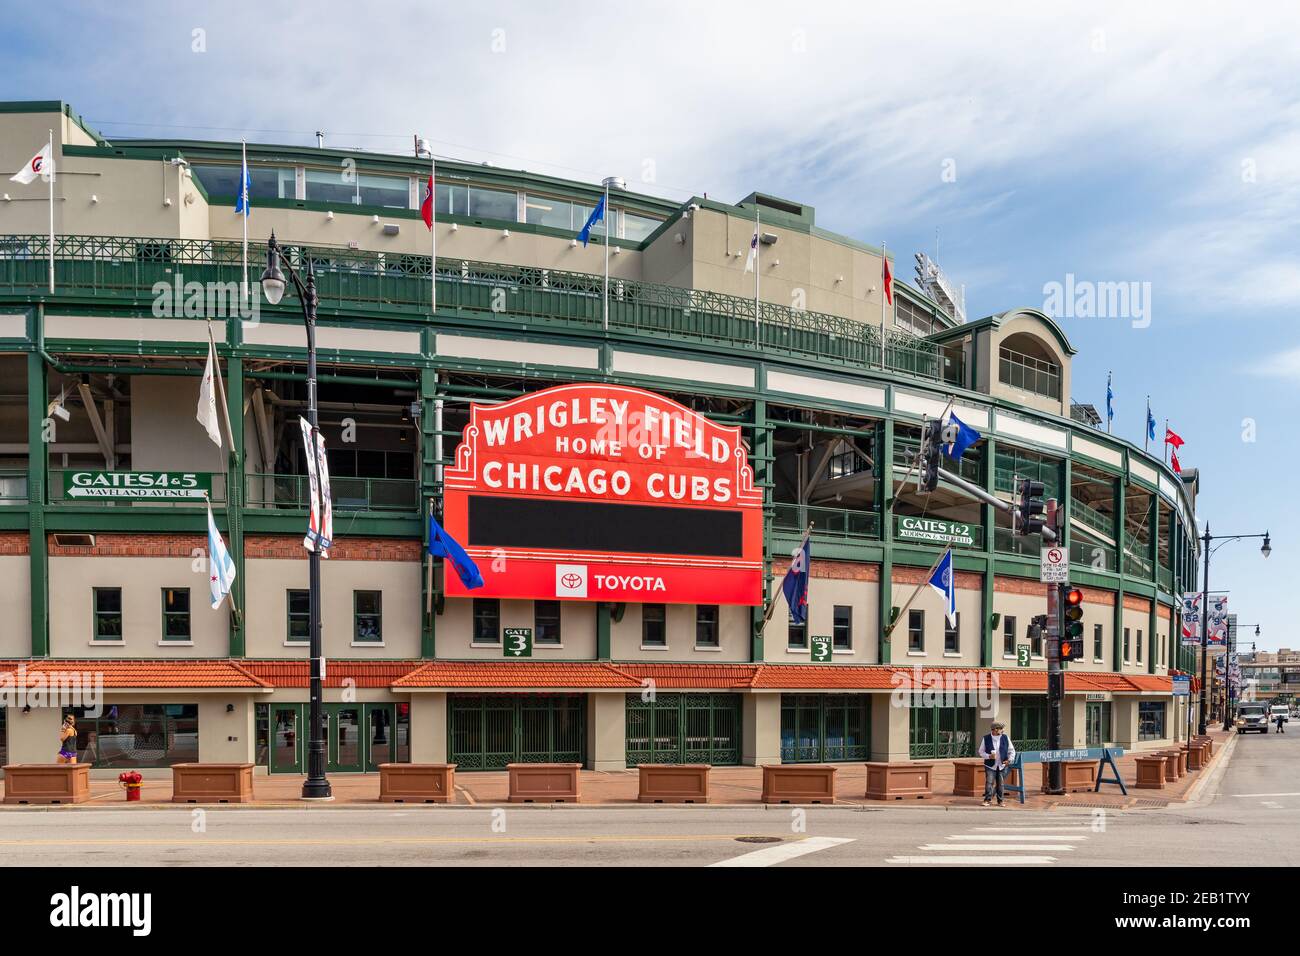 El exterior del estadio Wrigley Field de Chicago Cubs de la Major League Baseball en el barrio Wrigleyville de Chicago. Foto de stock